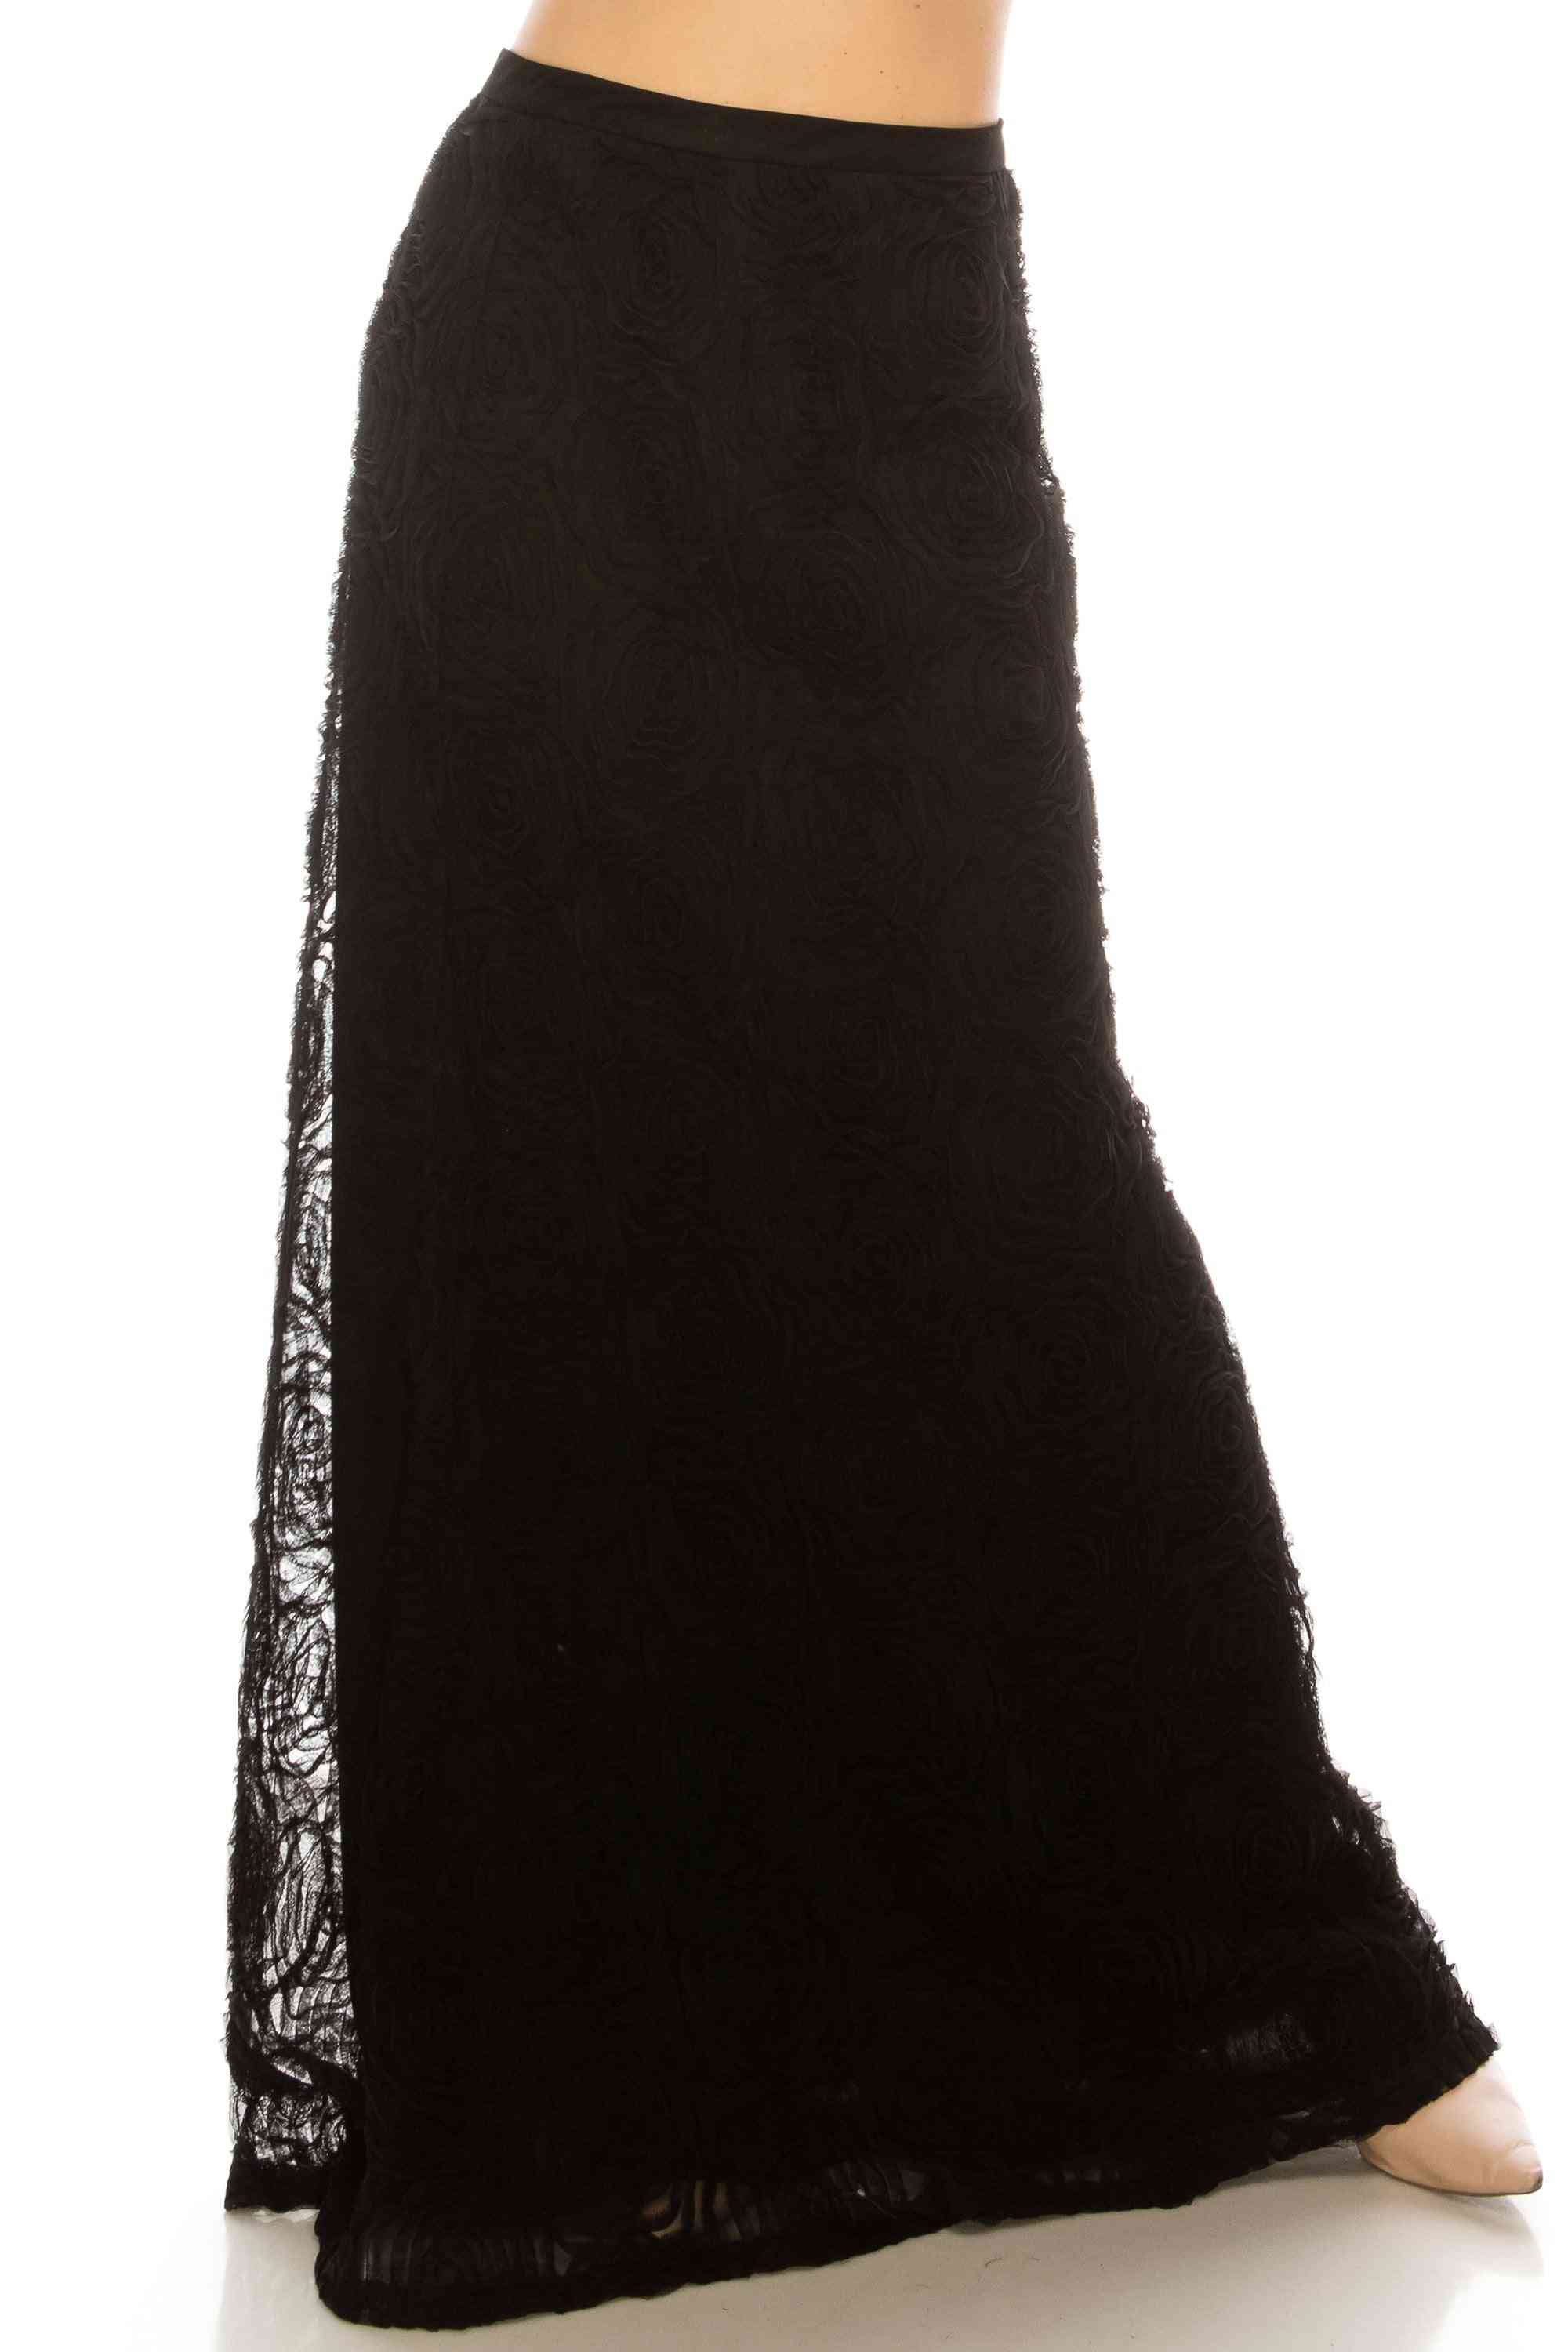 černá sukně po celé délce s vysokým pasem